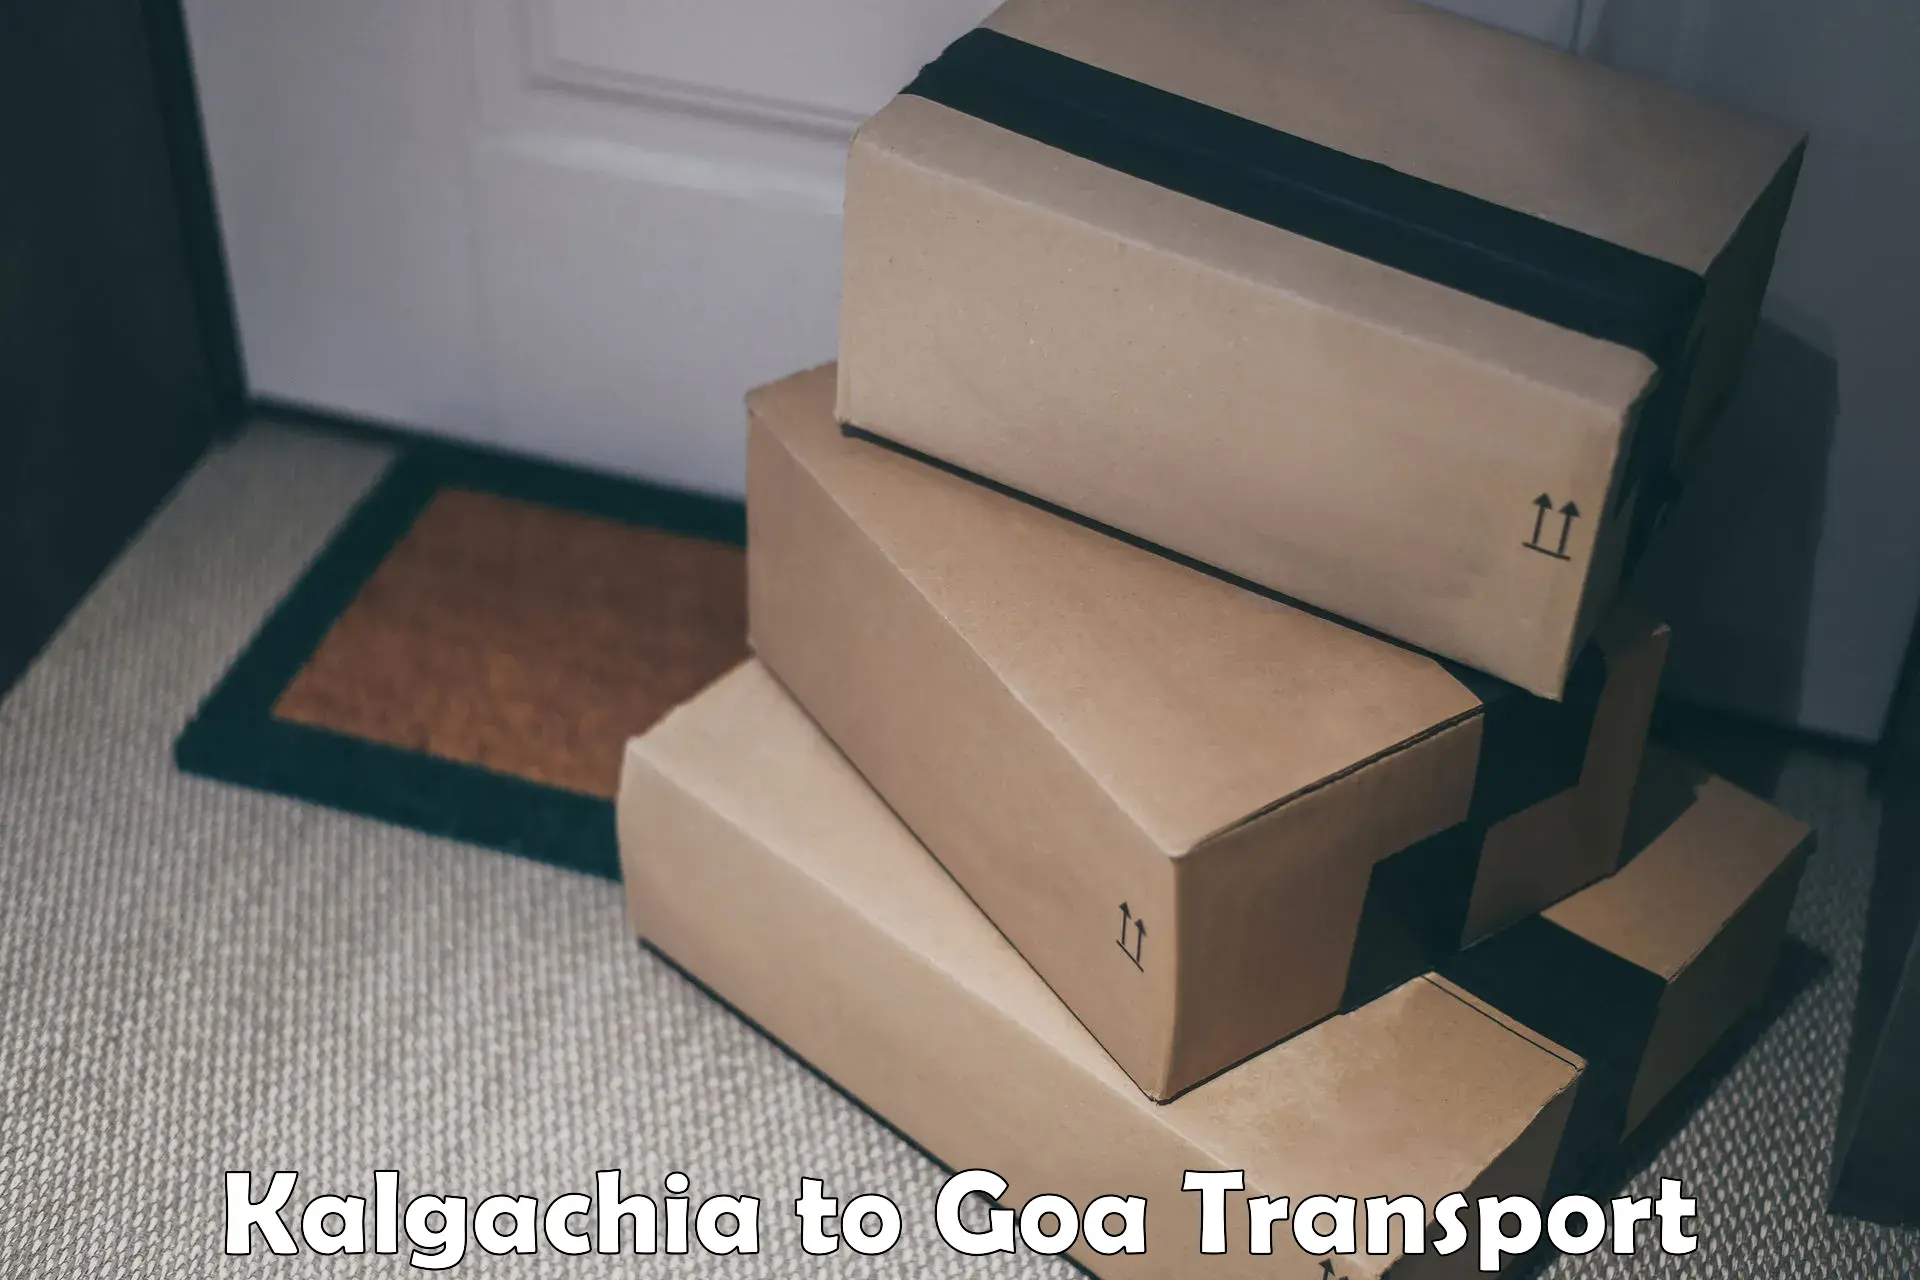 Two wheeler transport services Kalgachia to Vasco da Gama